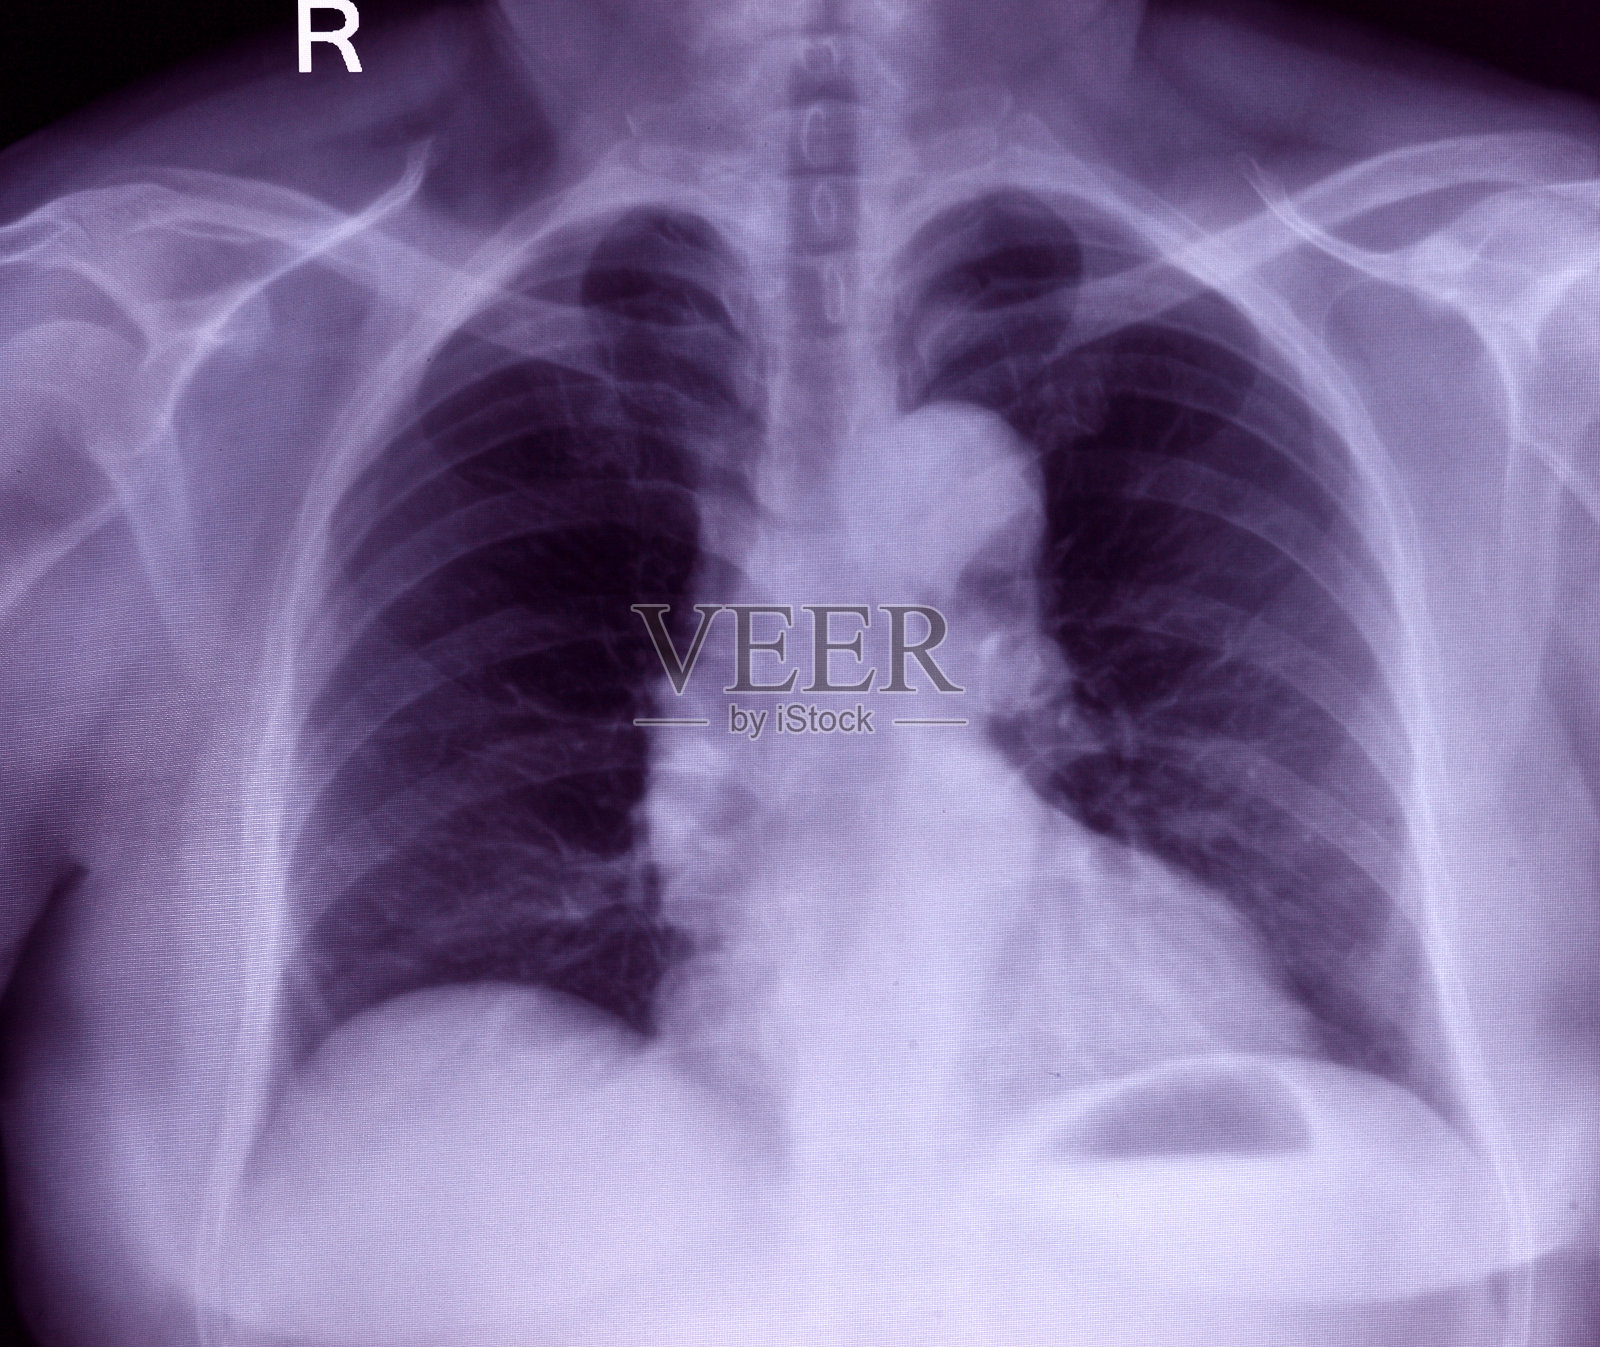 胸部x光图像照片摄影图片